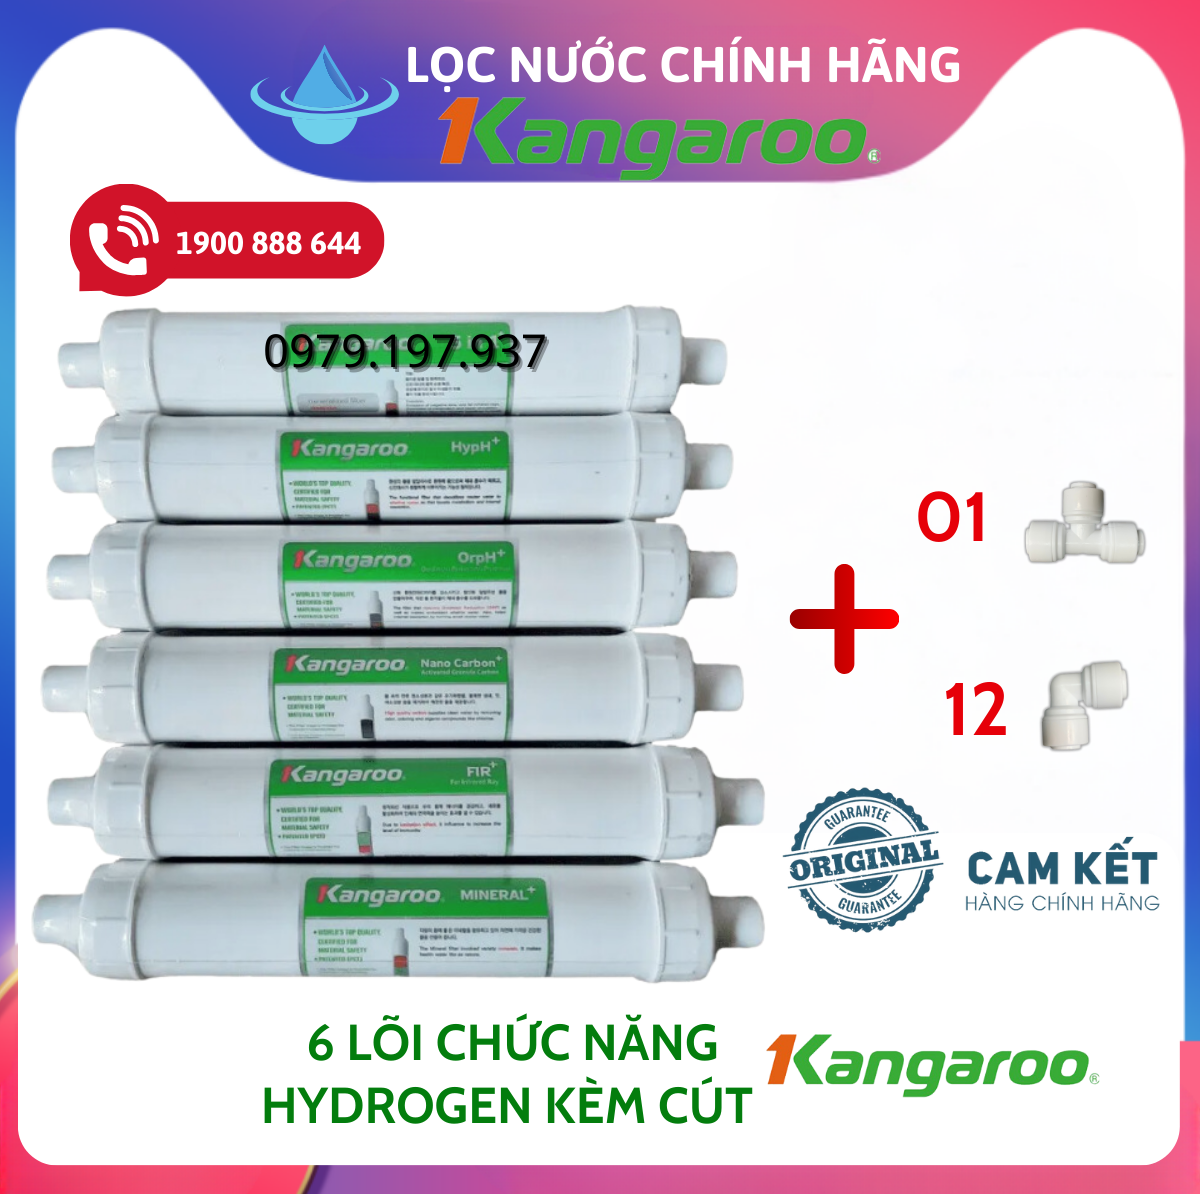 Combo 10 Lõi Lọc Nước Kangaroo Dòng Hydrogen (Model KG10A4 VTU...) (Combo gồm 123 HK + màng RO50GPD + 5 lõi chức năng Hydrogen +)